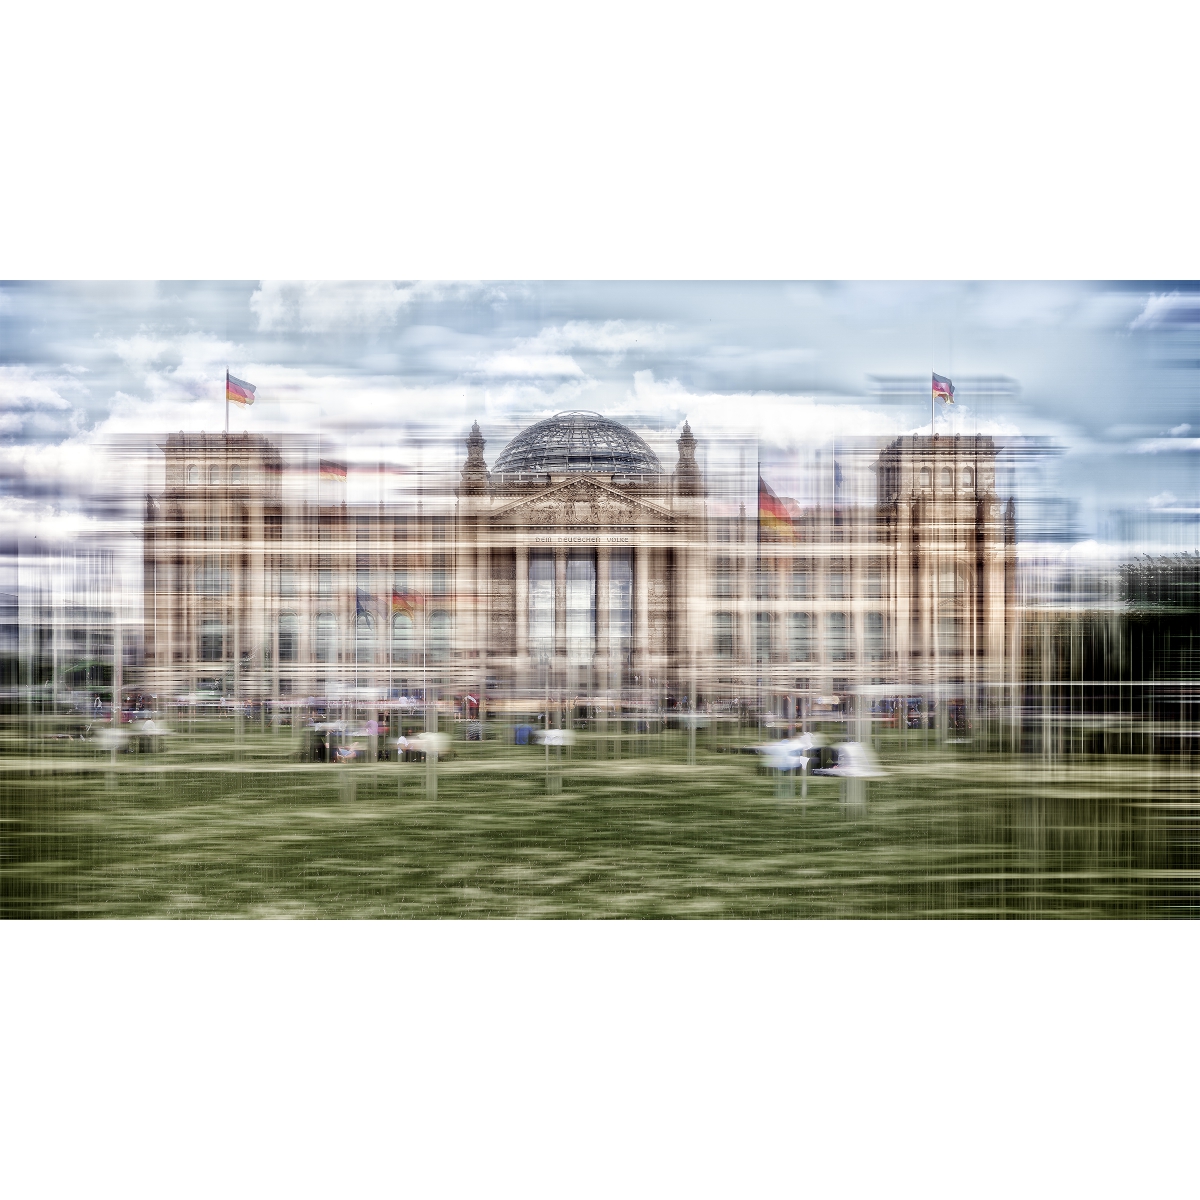 Reichstag fini3 copy